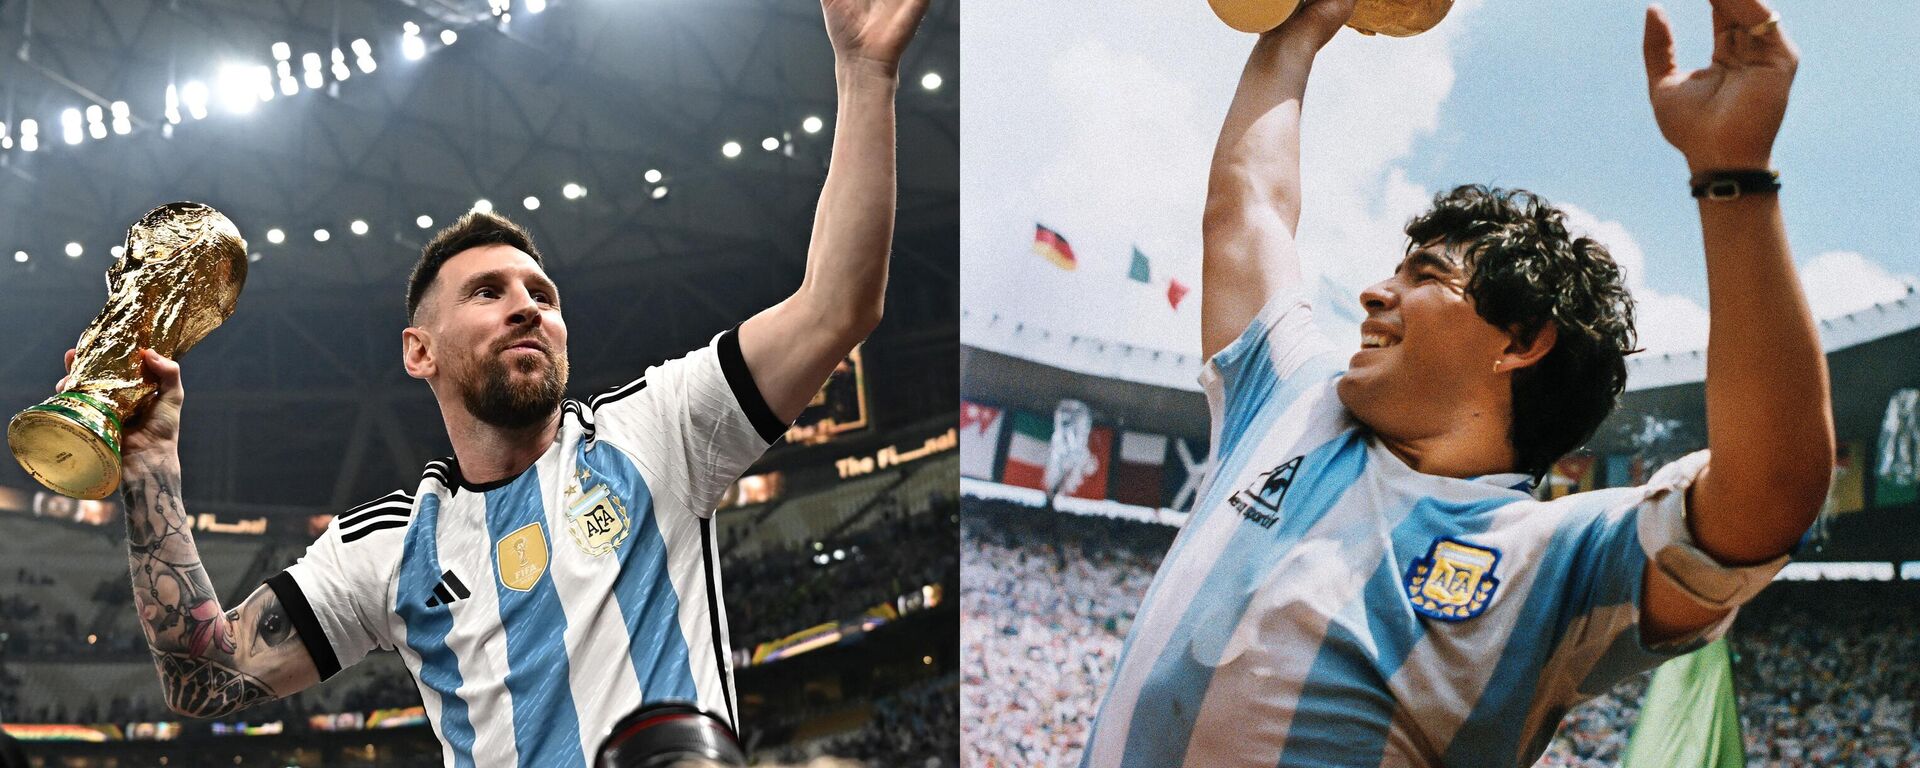 المهاجم الأرجنتيني ليونيل ميسي (يسار) وهو يحمل كأس العالم بعد فوزه على فرنسا خلال المباراة النهائية لكأس العالم 2022 ،  ودييغو مارادونا (يمينا) يحمل كأس العالم التي فاز بها فريقه بعد فوزه 3-2 على ألمانيا الغربية في 29 يونيو 1986  - سبوتنيك عربي, 1920, 19.12.2022